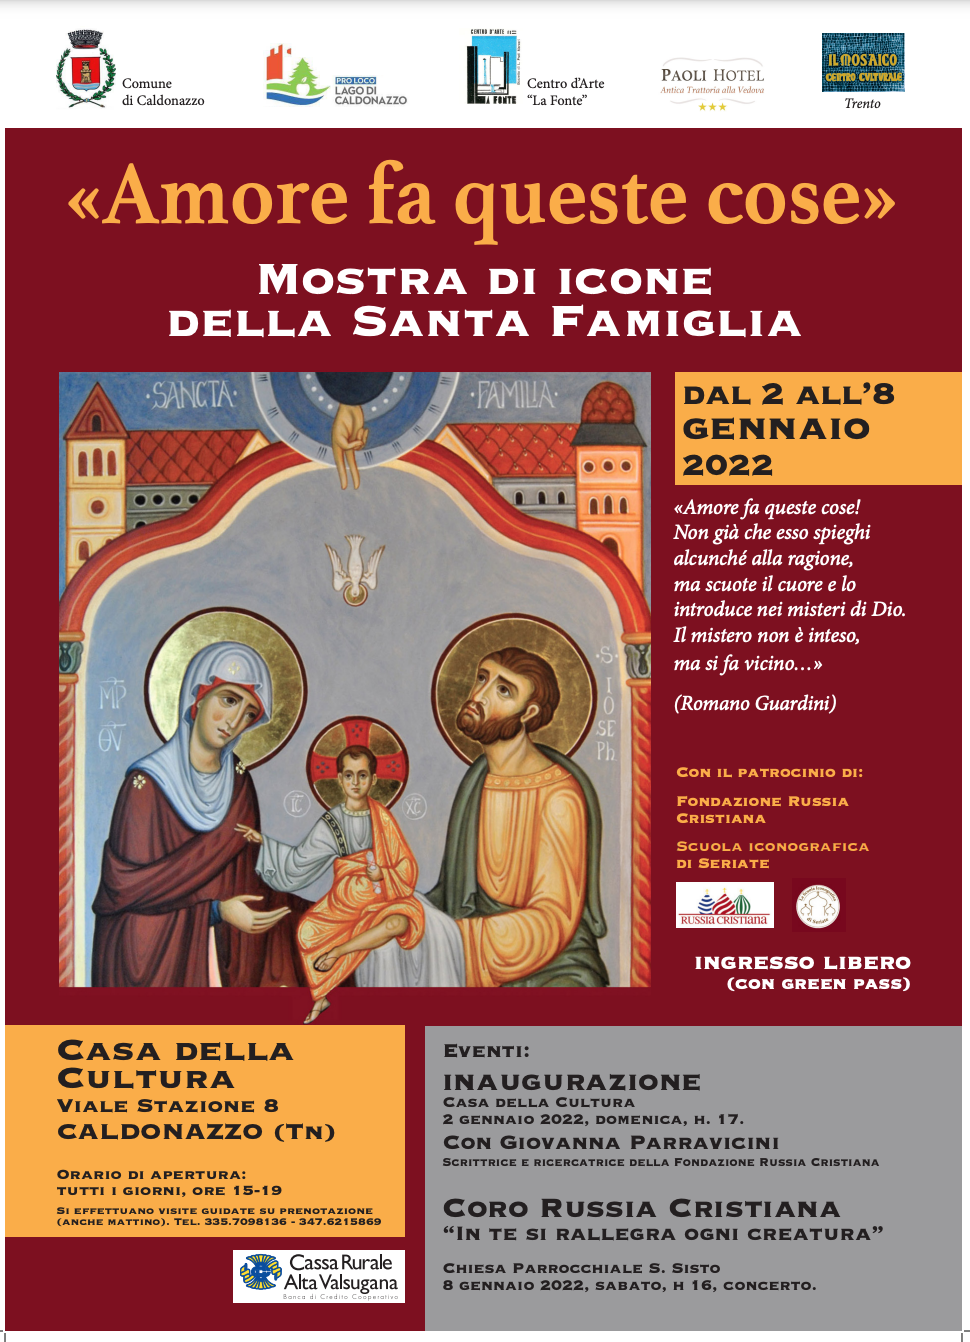 Featured image for “Trento: Mostra di Icone della Santa Famiglia”